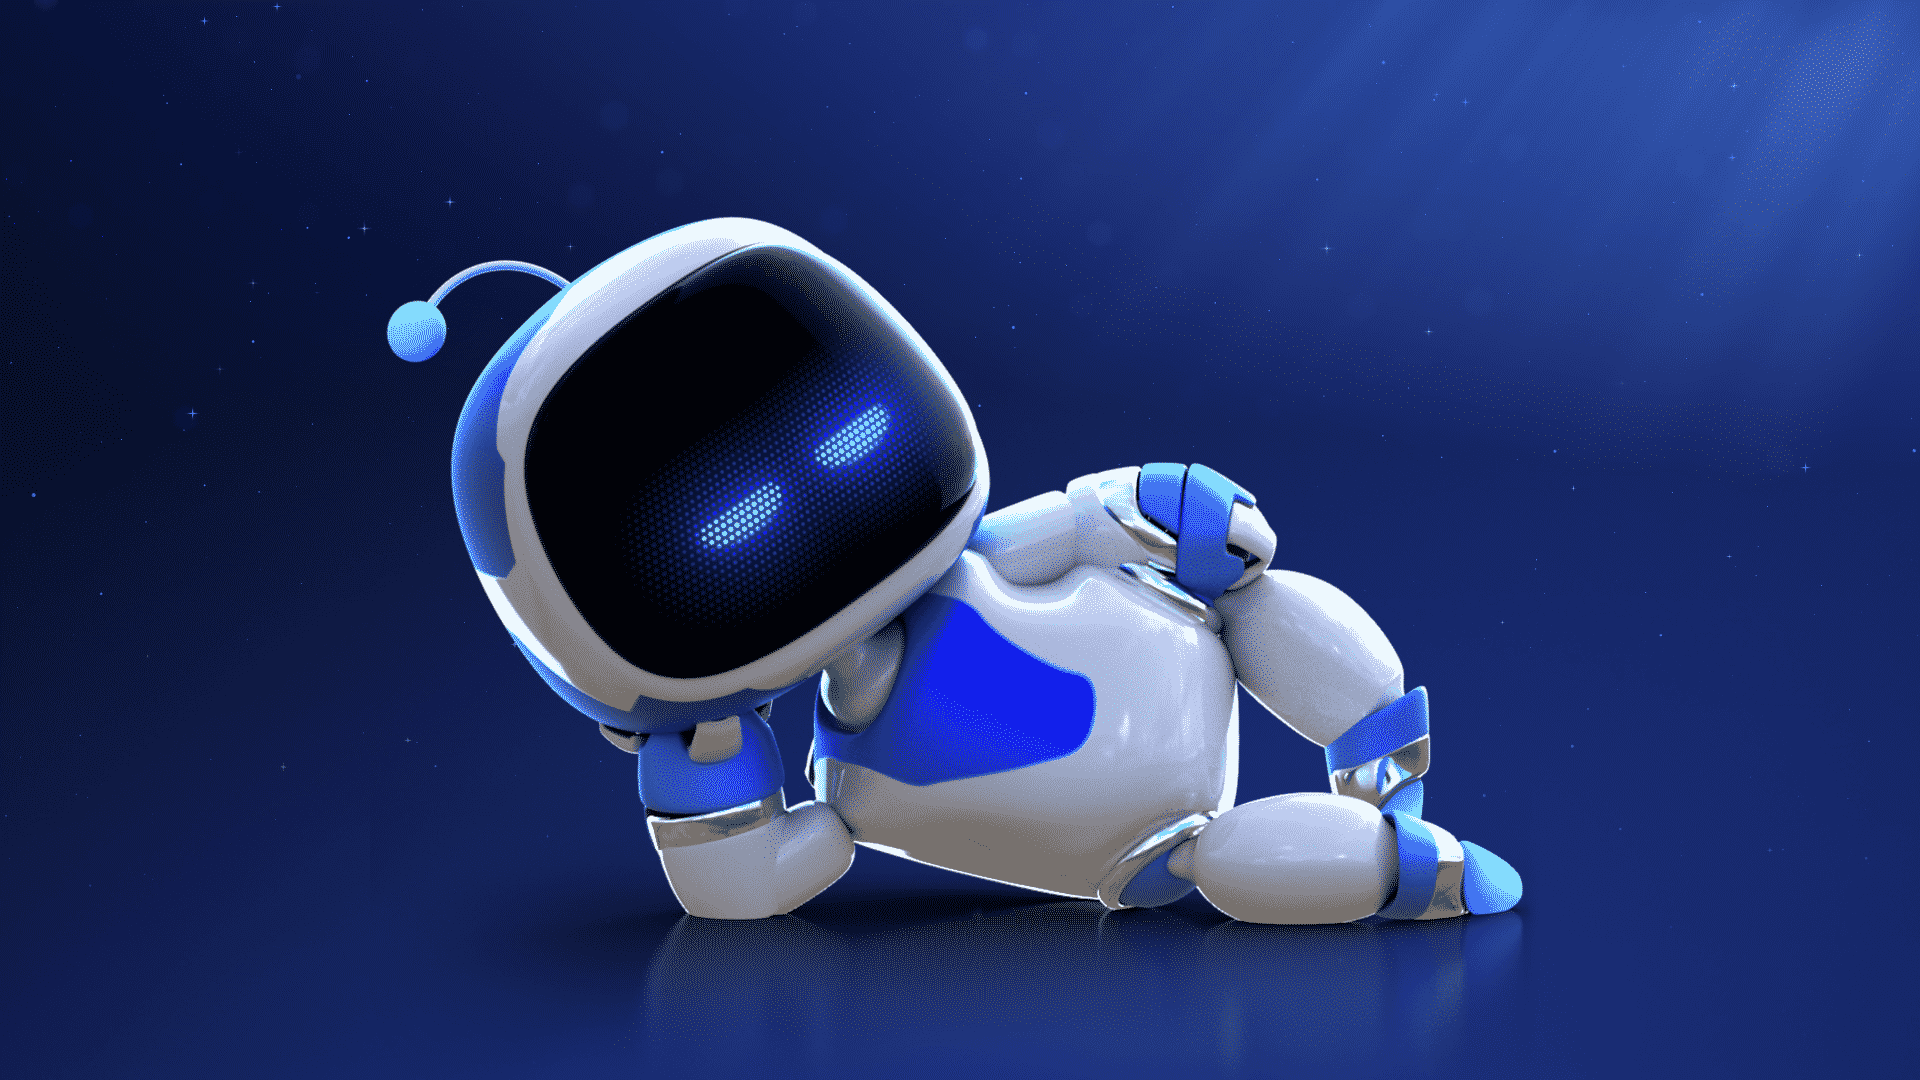 Astro bot